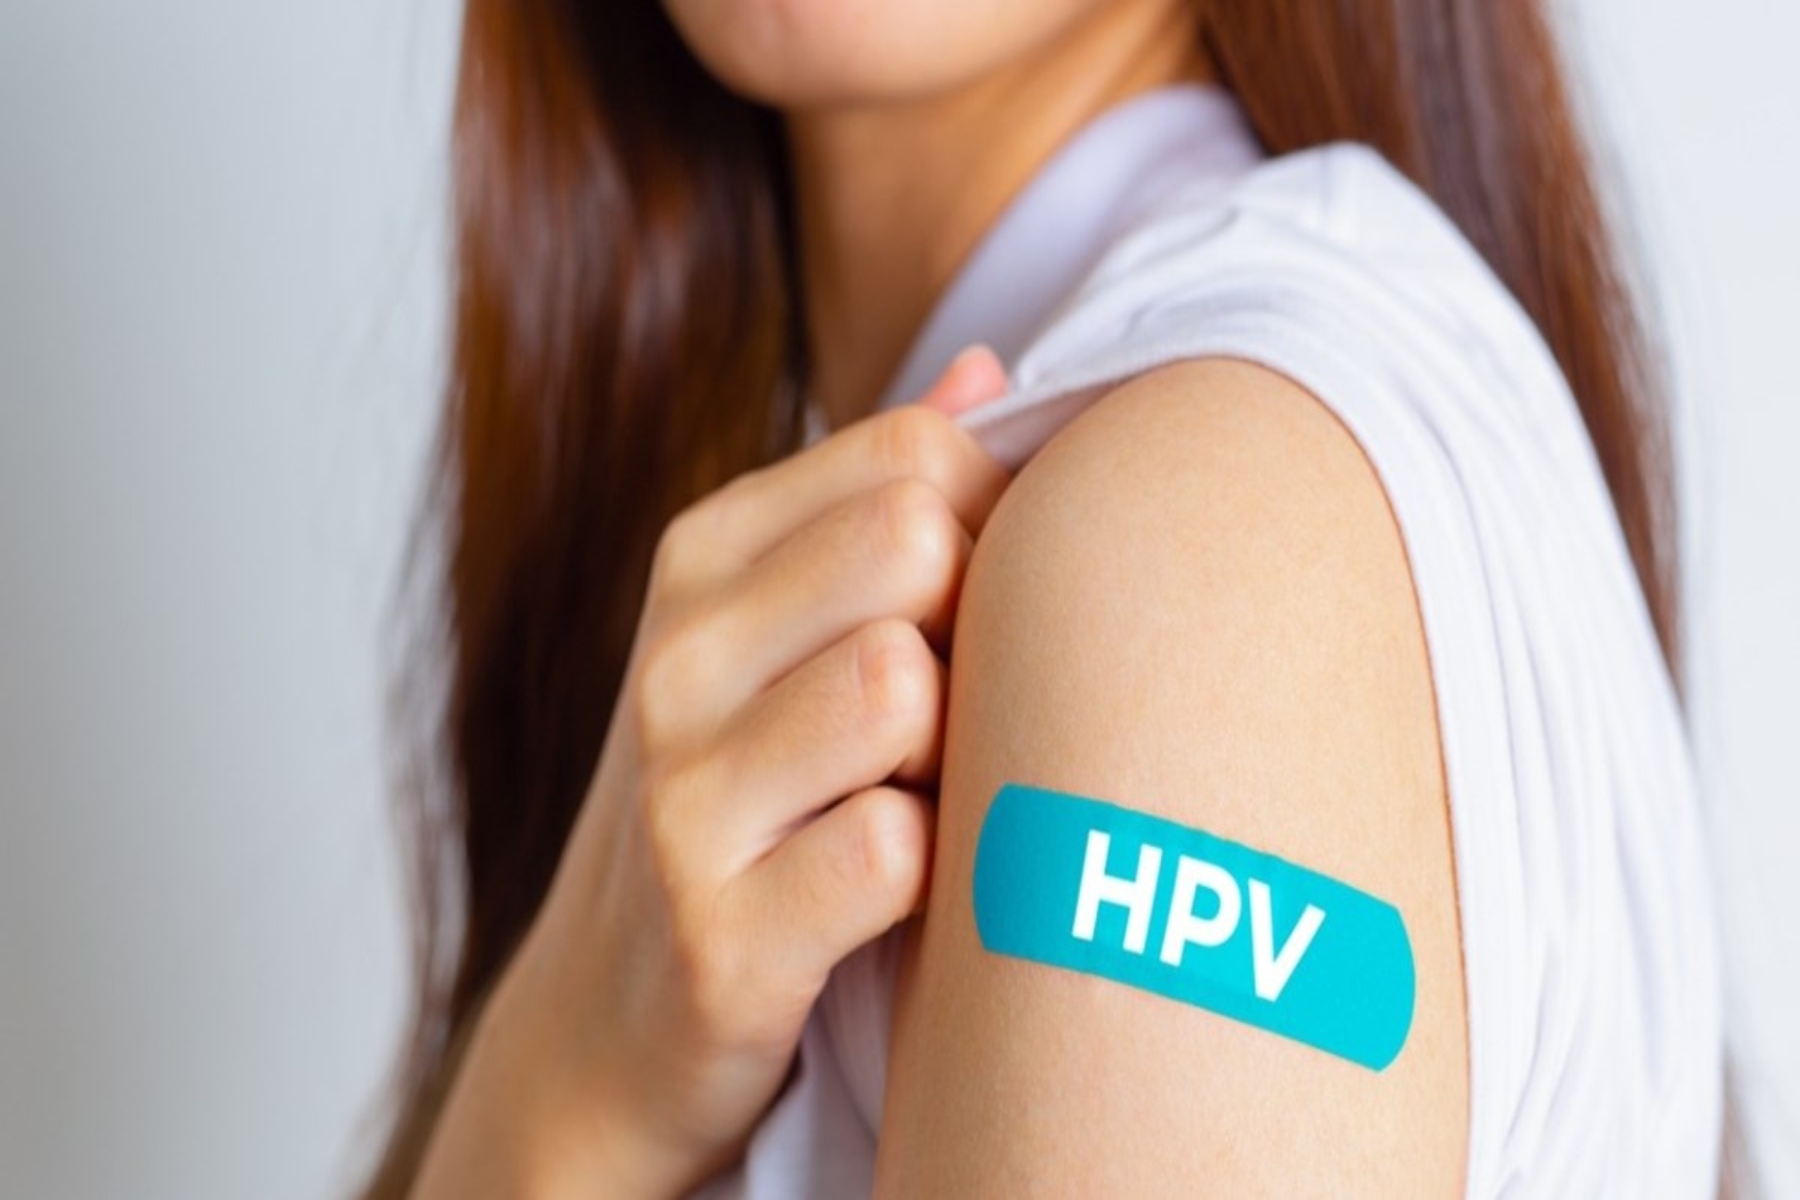 4η Μαρτίου: Διεθνής μέρα ευαισθητοποίησης για τον ιό HPV